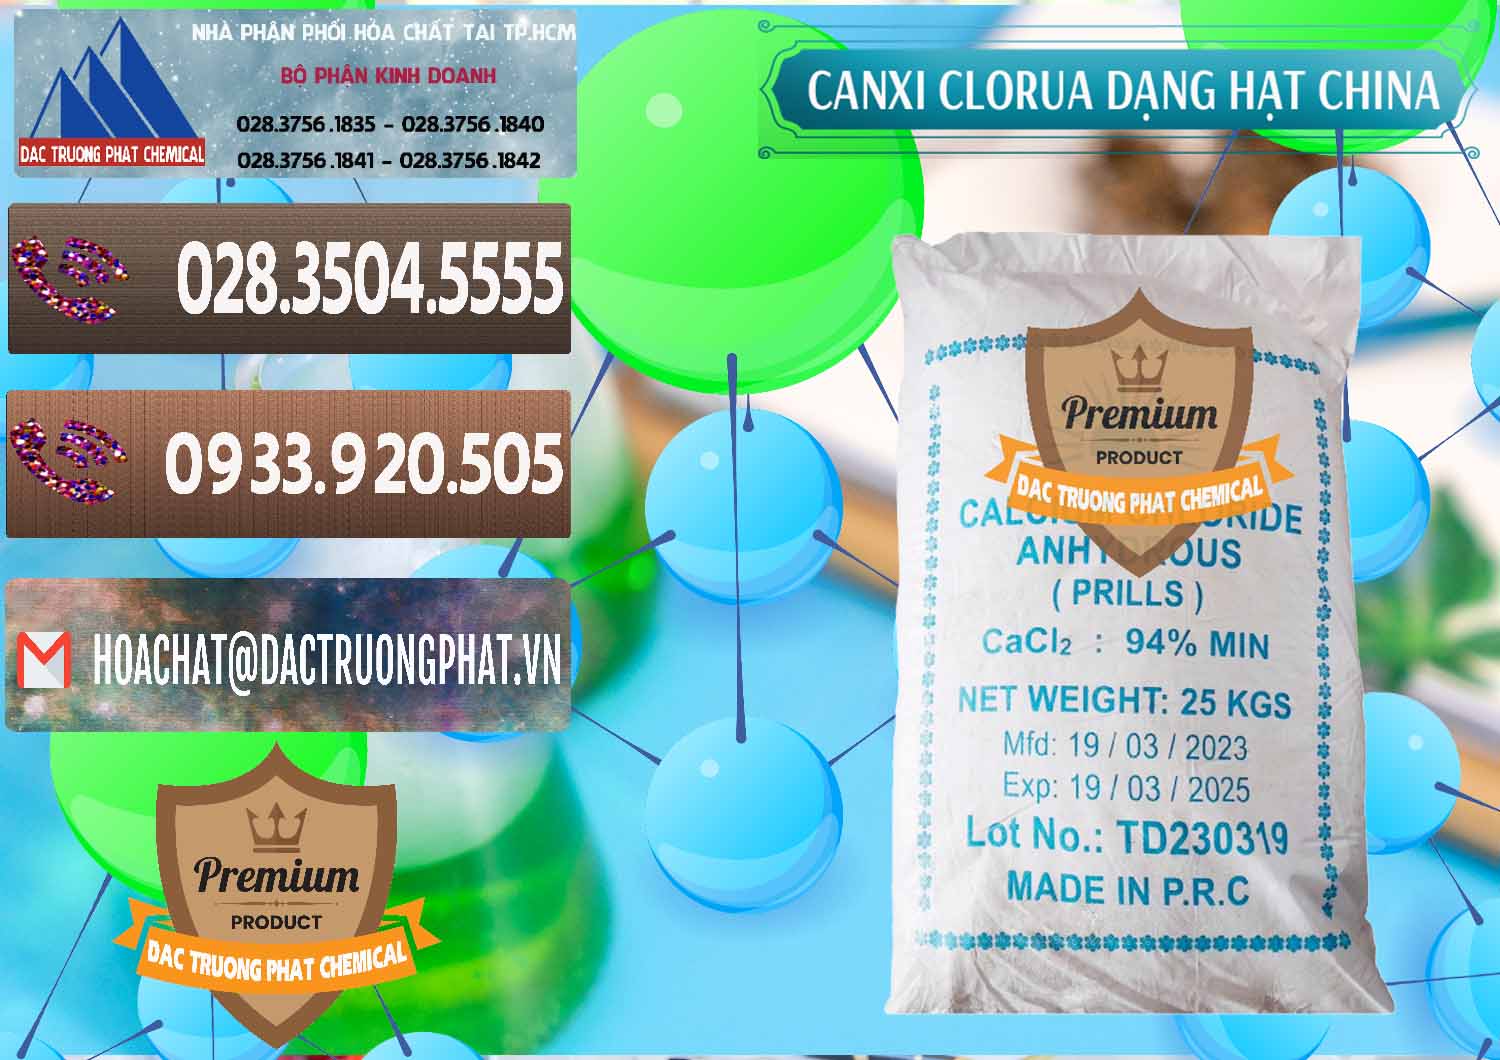 Công ty bán và cung ứng CaCl2 – Canxi Clorua 94% Dạng Hạt Trung Quốc China - 0373 - Công ty chuyên phân phối _ cung ứng hóa chất tại TP.HCM - hoachatviet.net